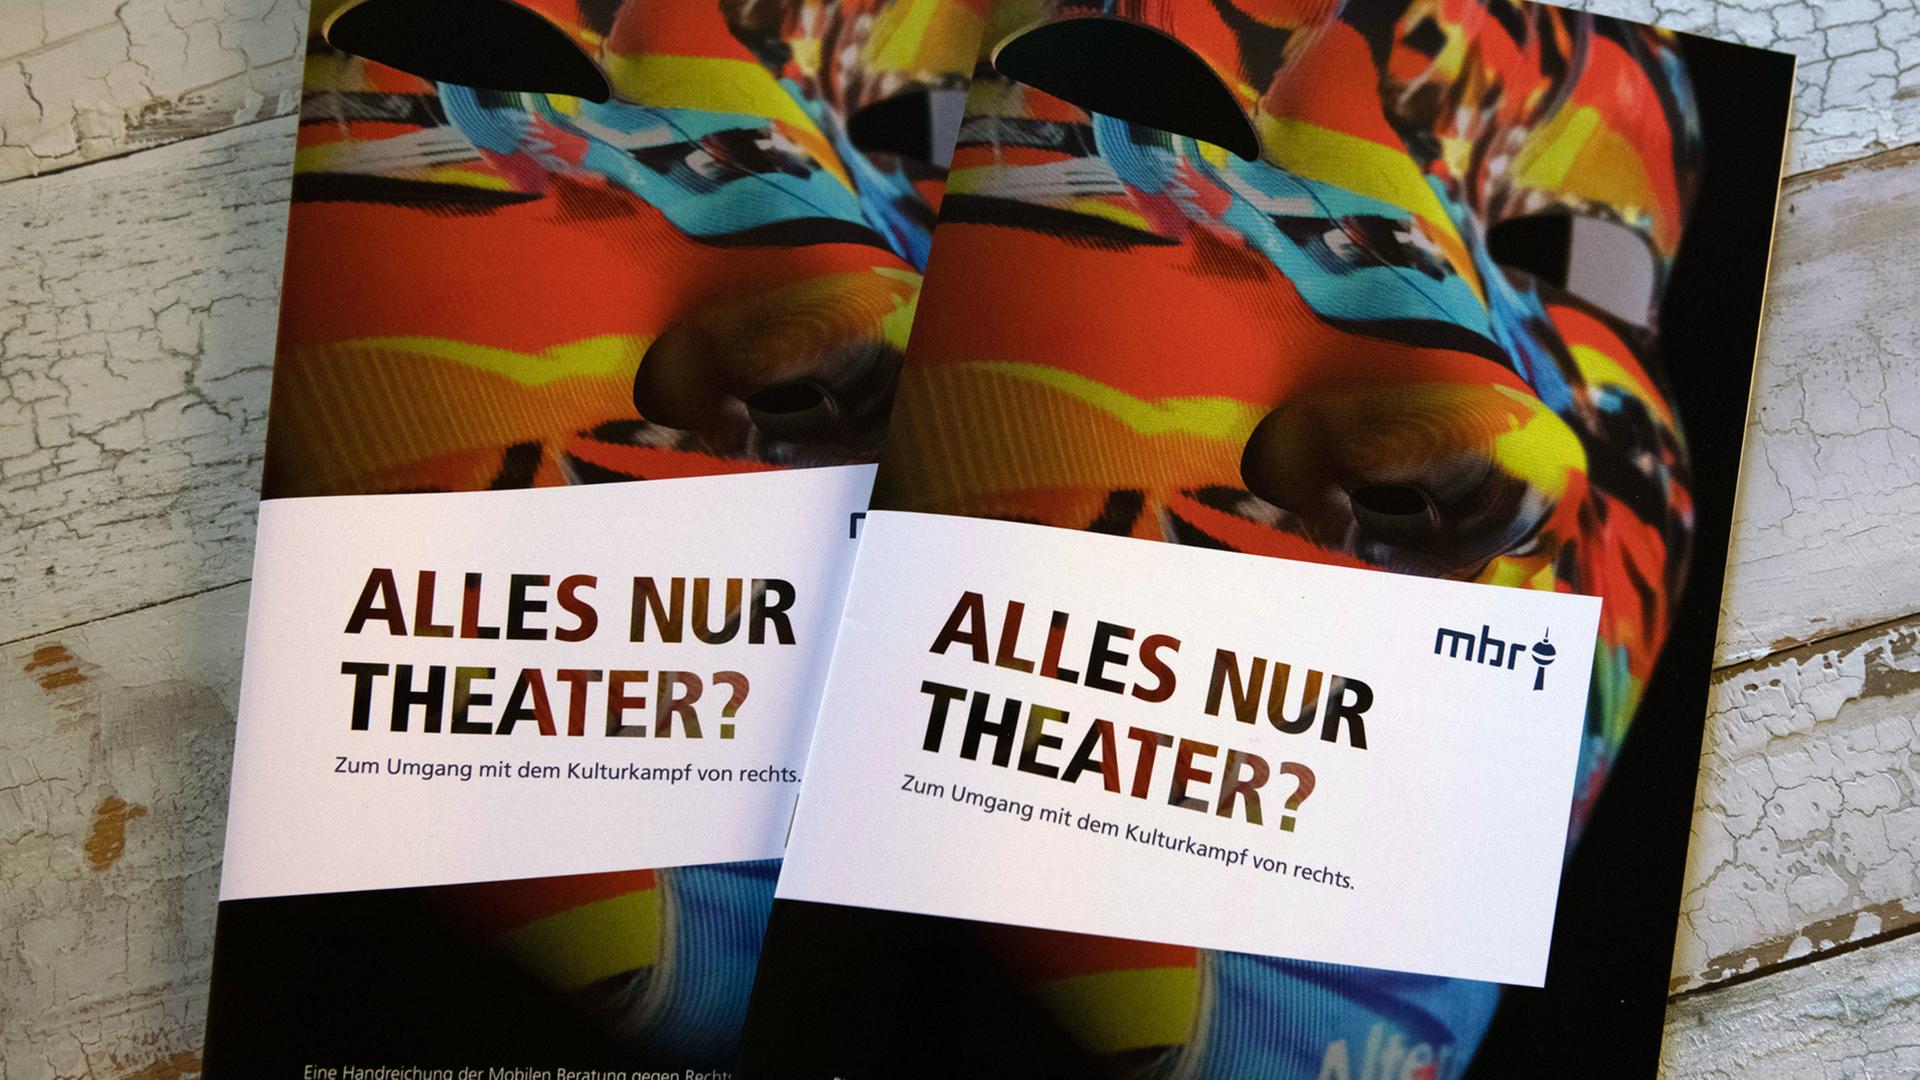 Die Broschüre "Alles nur Theater? Zum Umgang mit dem Kulturkampf von rechts" liegt auf einem Tisch.